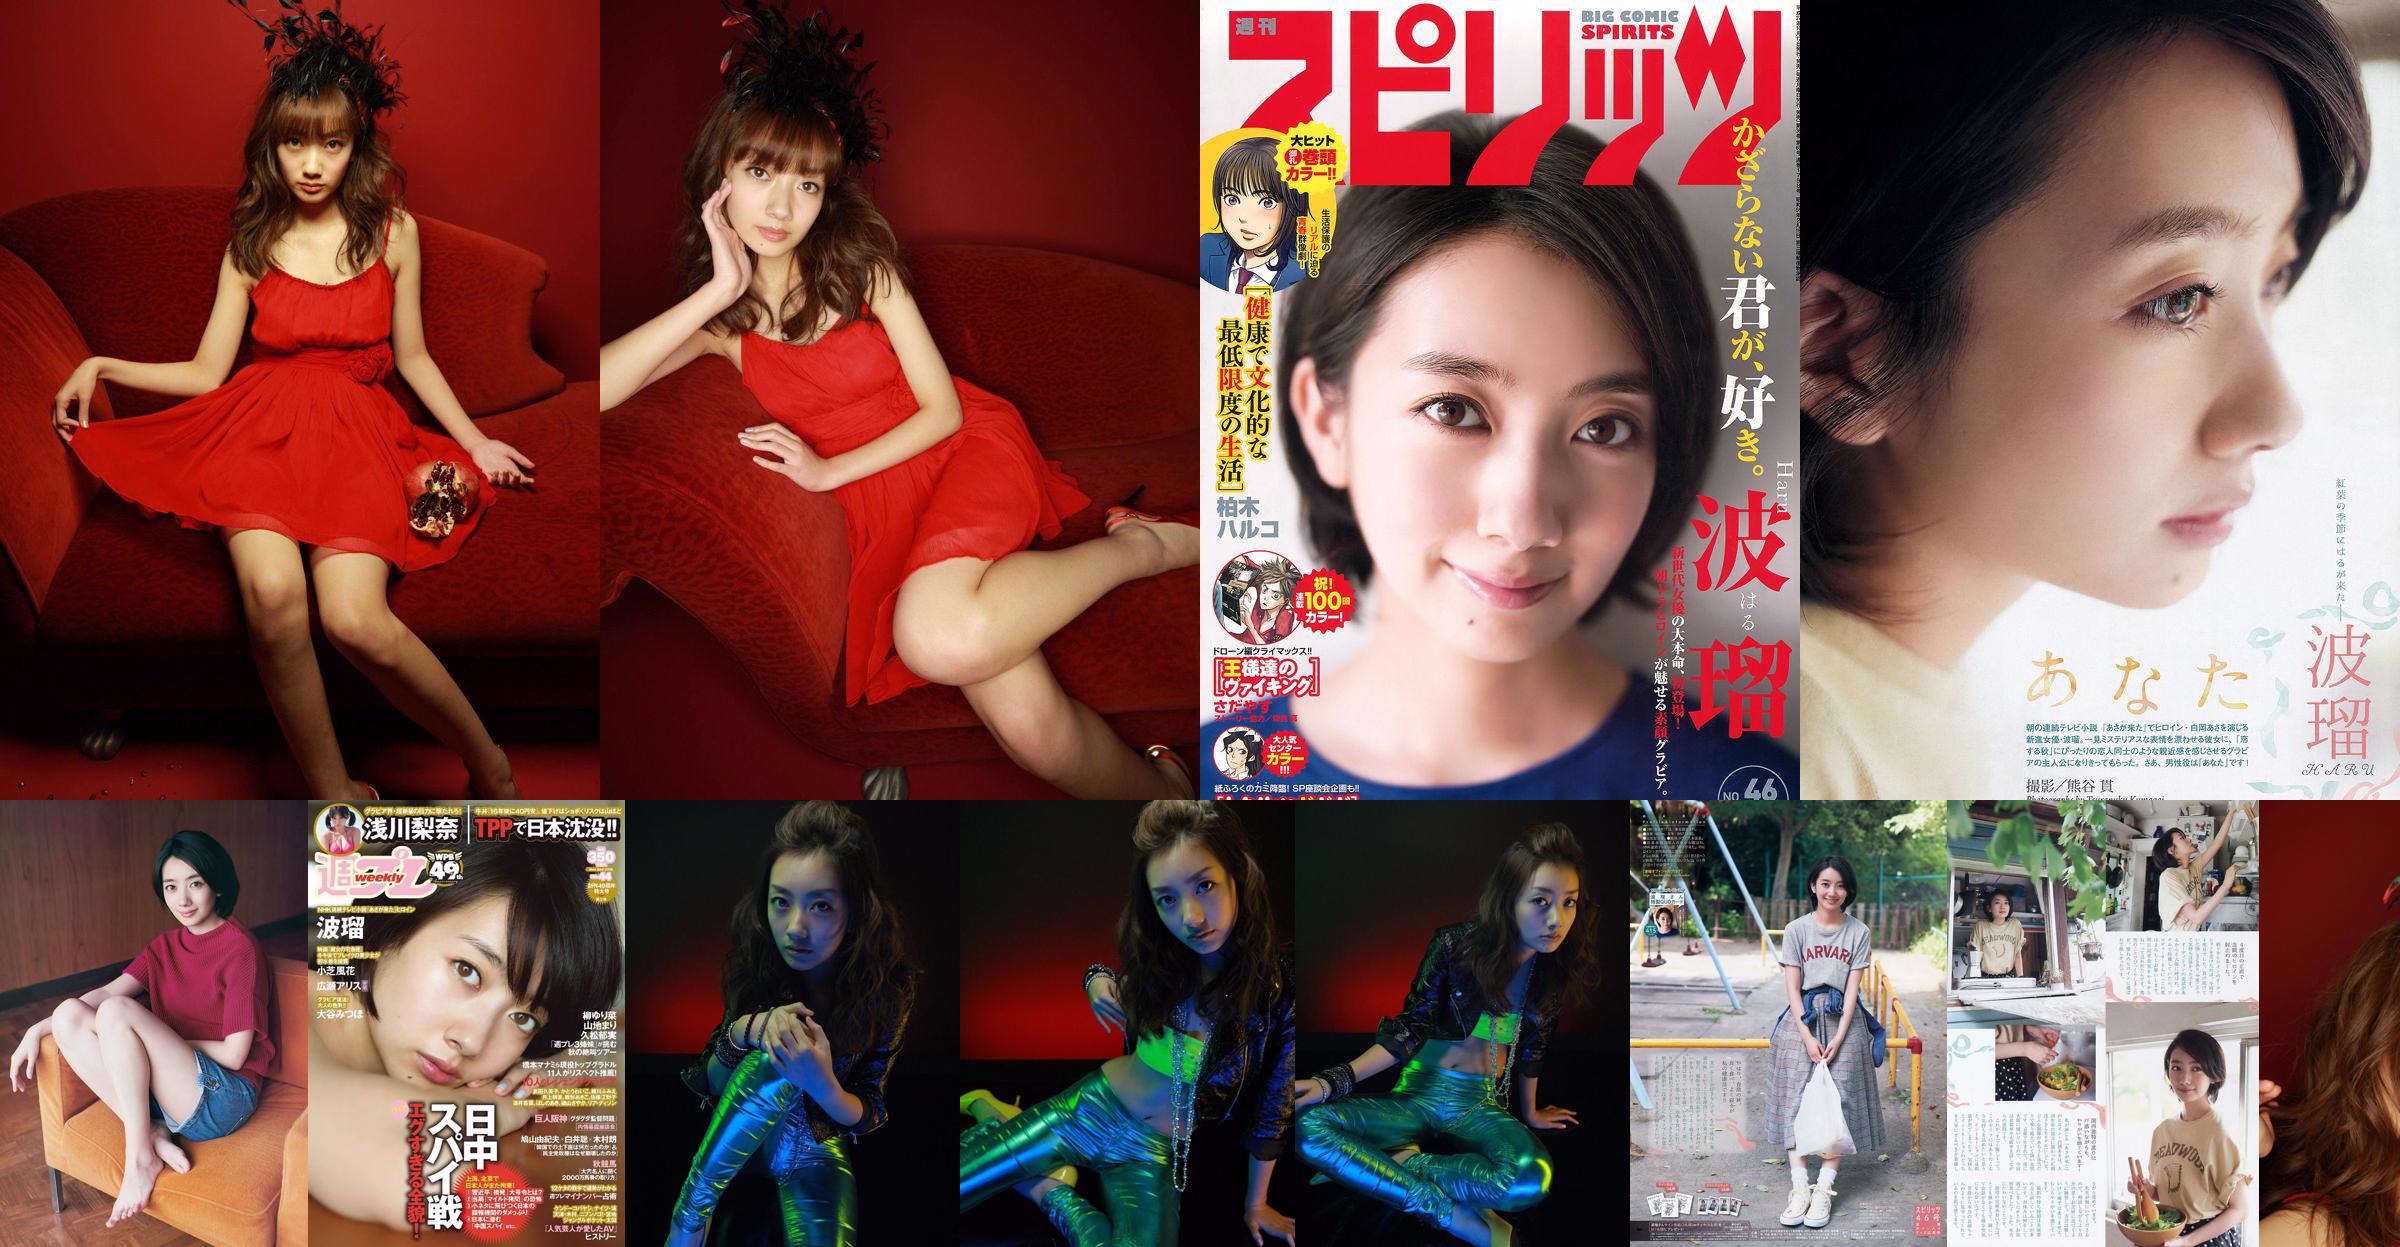 Haru, Asakawa Rina, Xiaozhi Fenghua, 広瀬アリス, Otani みつほ [Weekly Playboy] 2015 No.44 Photo Magazine No.f2cf55 Page 5